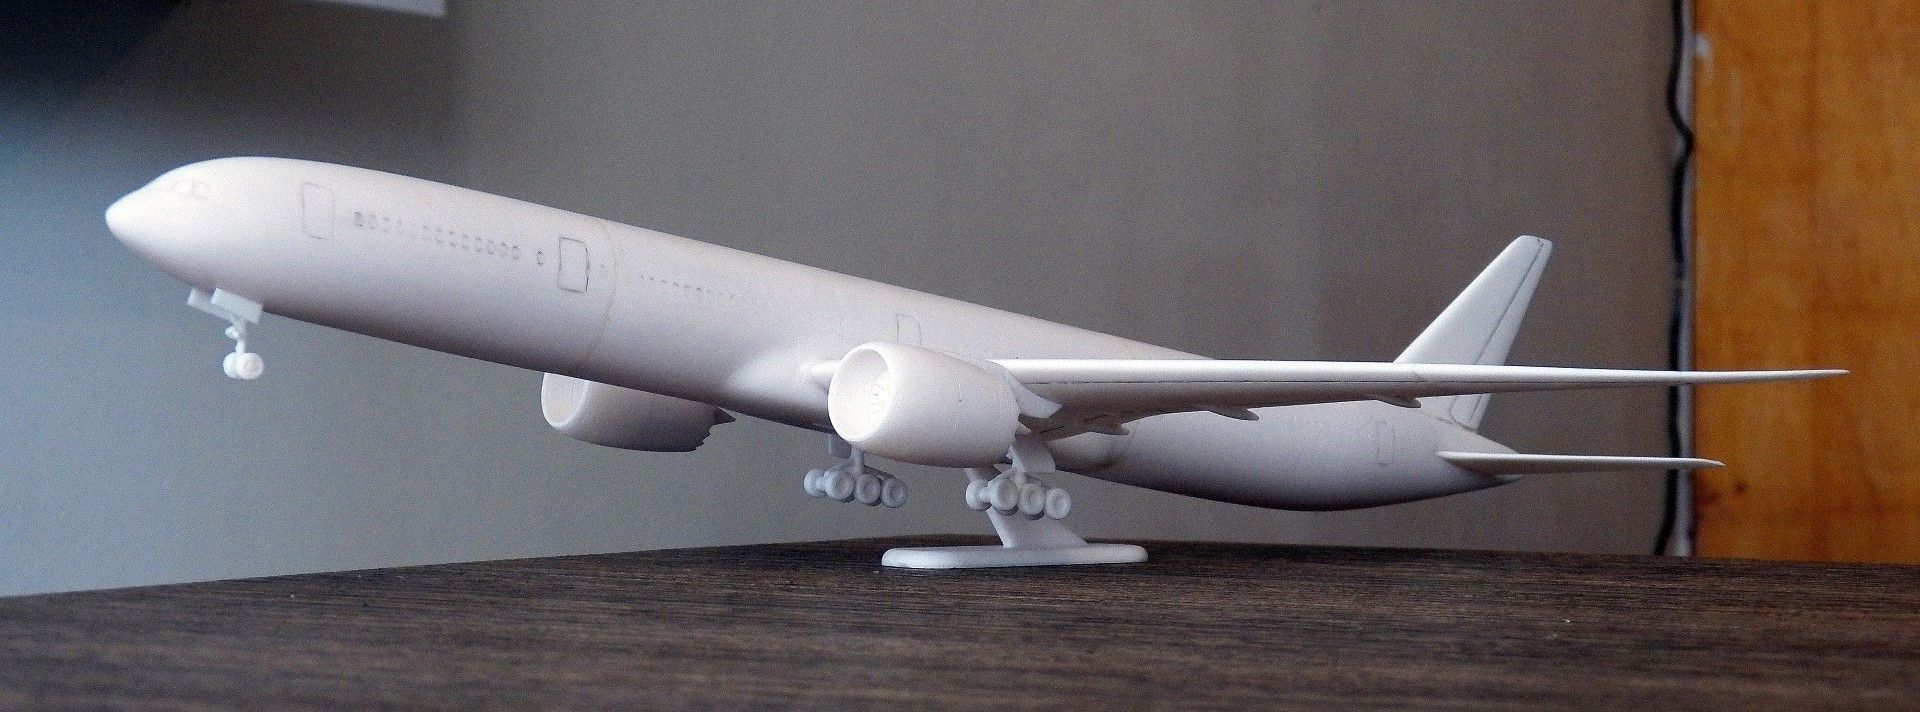 100_0077 (Large).jpg Télécharger fichier STL Modèle réduit d'avion Boeing 777X • Modèle imprimable en 3D, guaro3d